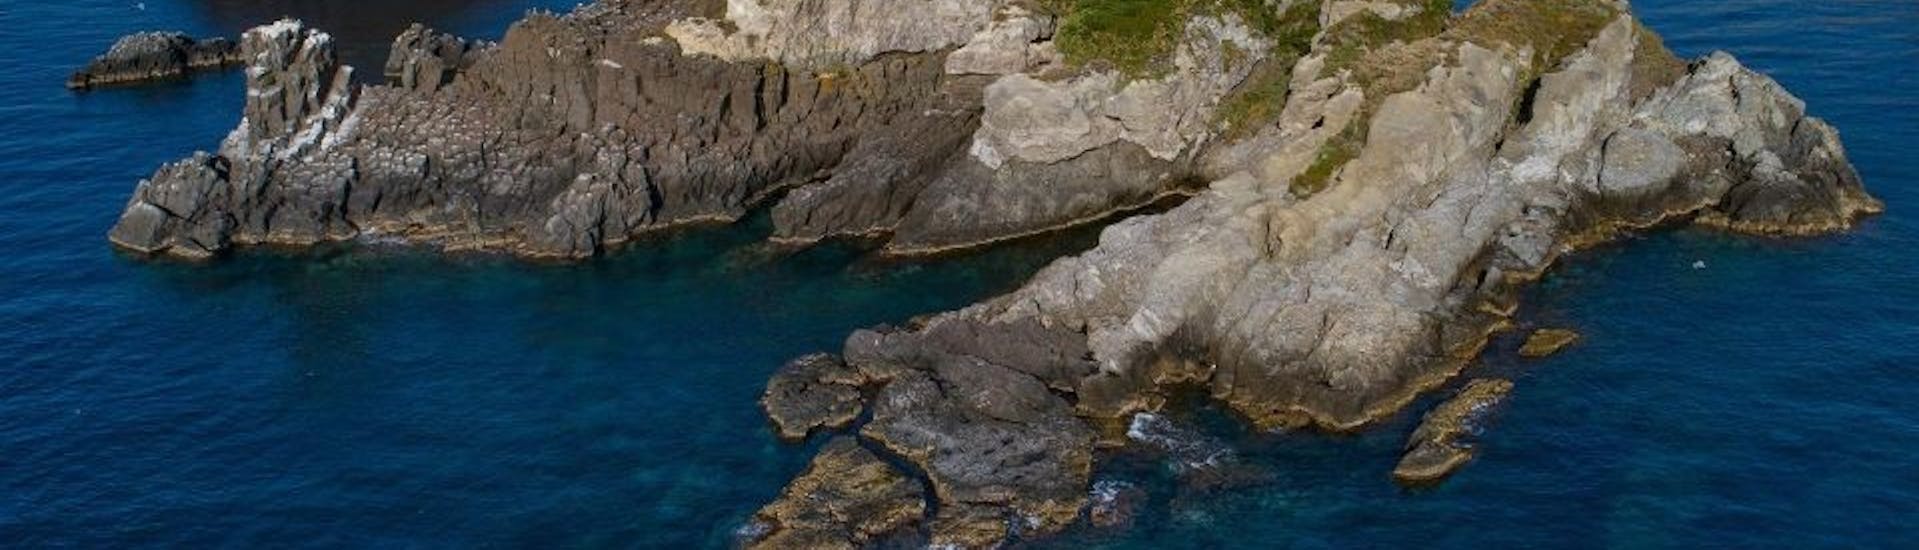 Bootstour von Aci Trezza - Cyclops Islands  & Schwimmen.